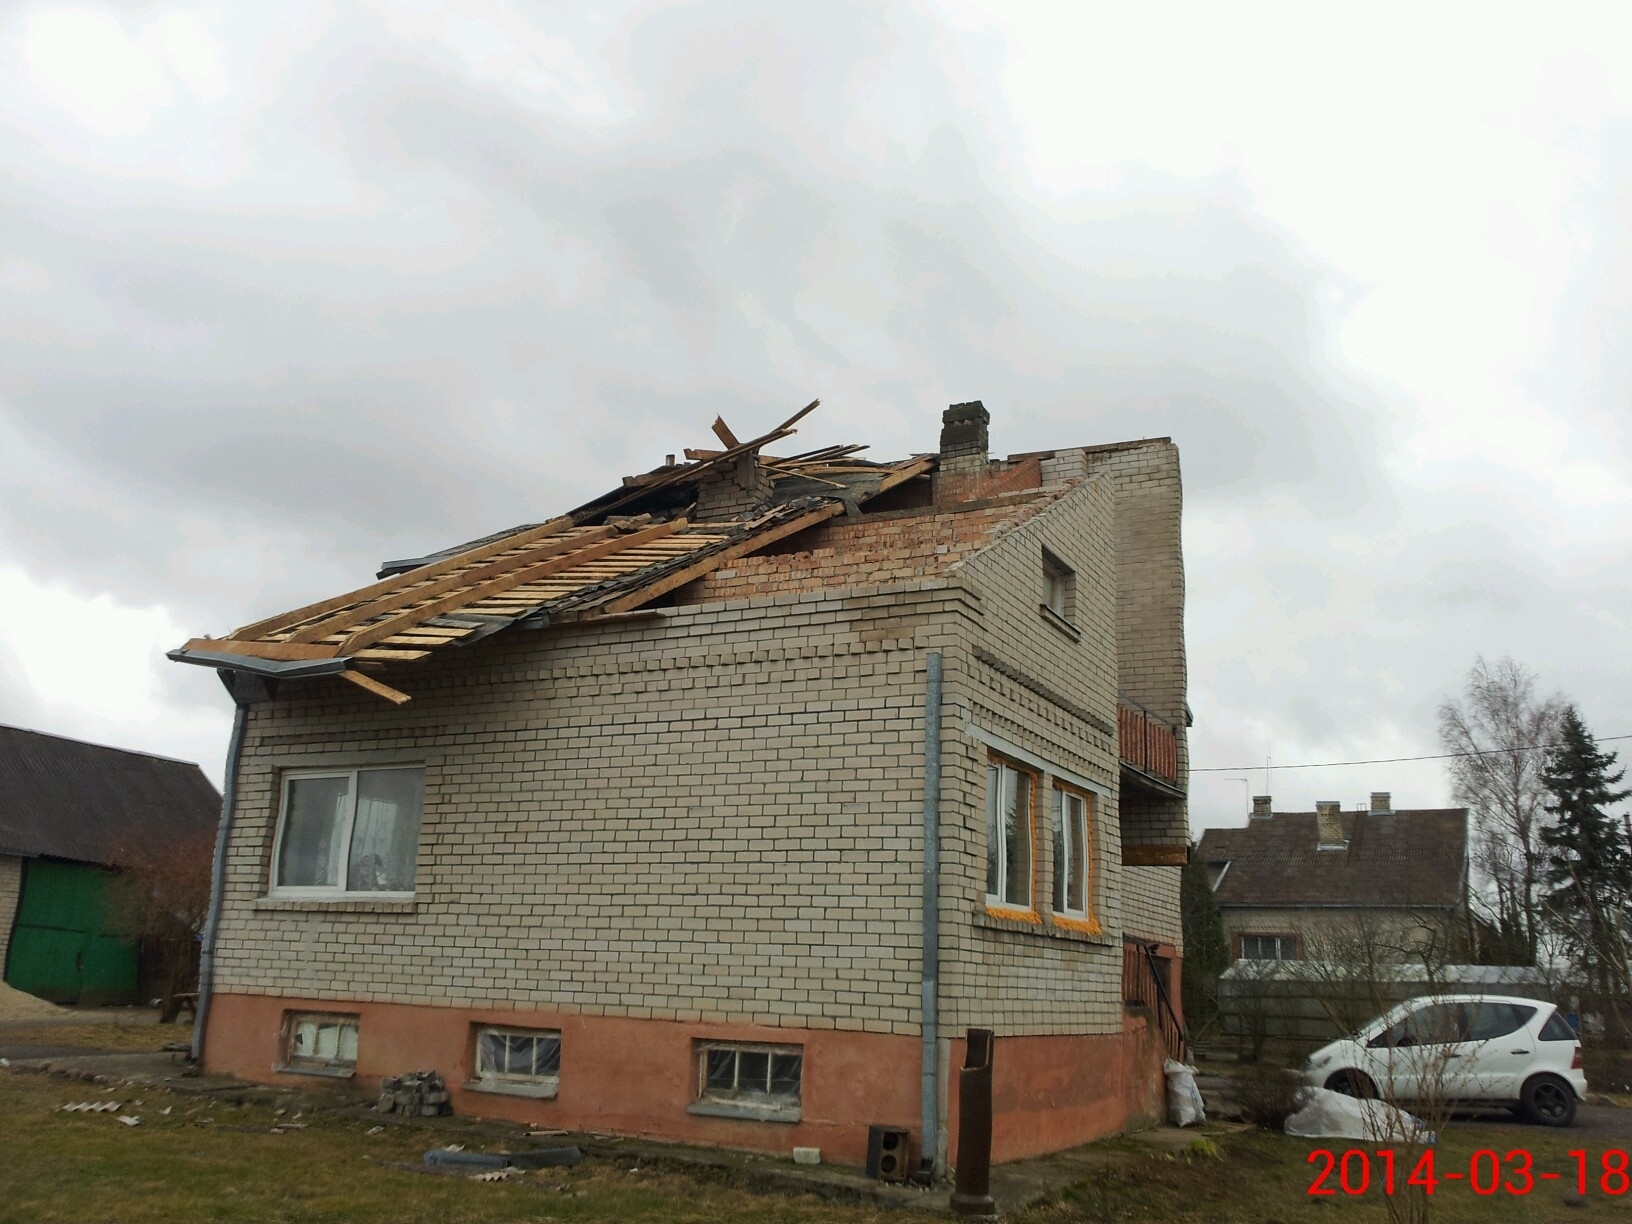 Žemės drebėjimai lietuviams kelia daugiau baimės nei gaisrai